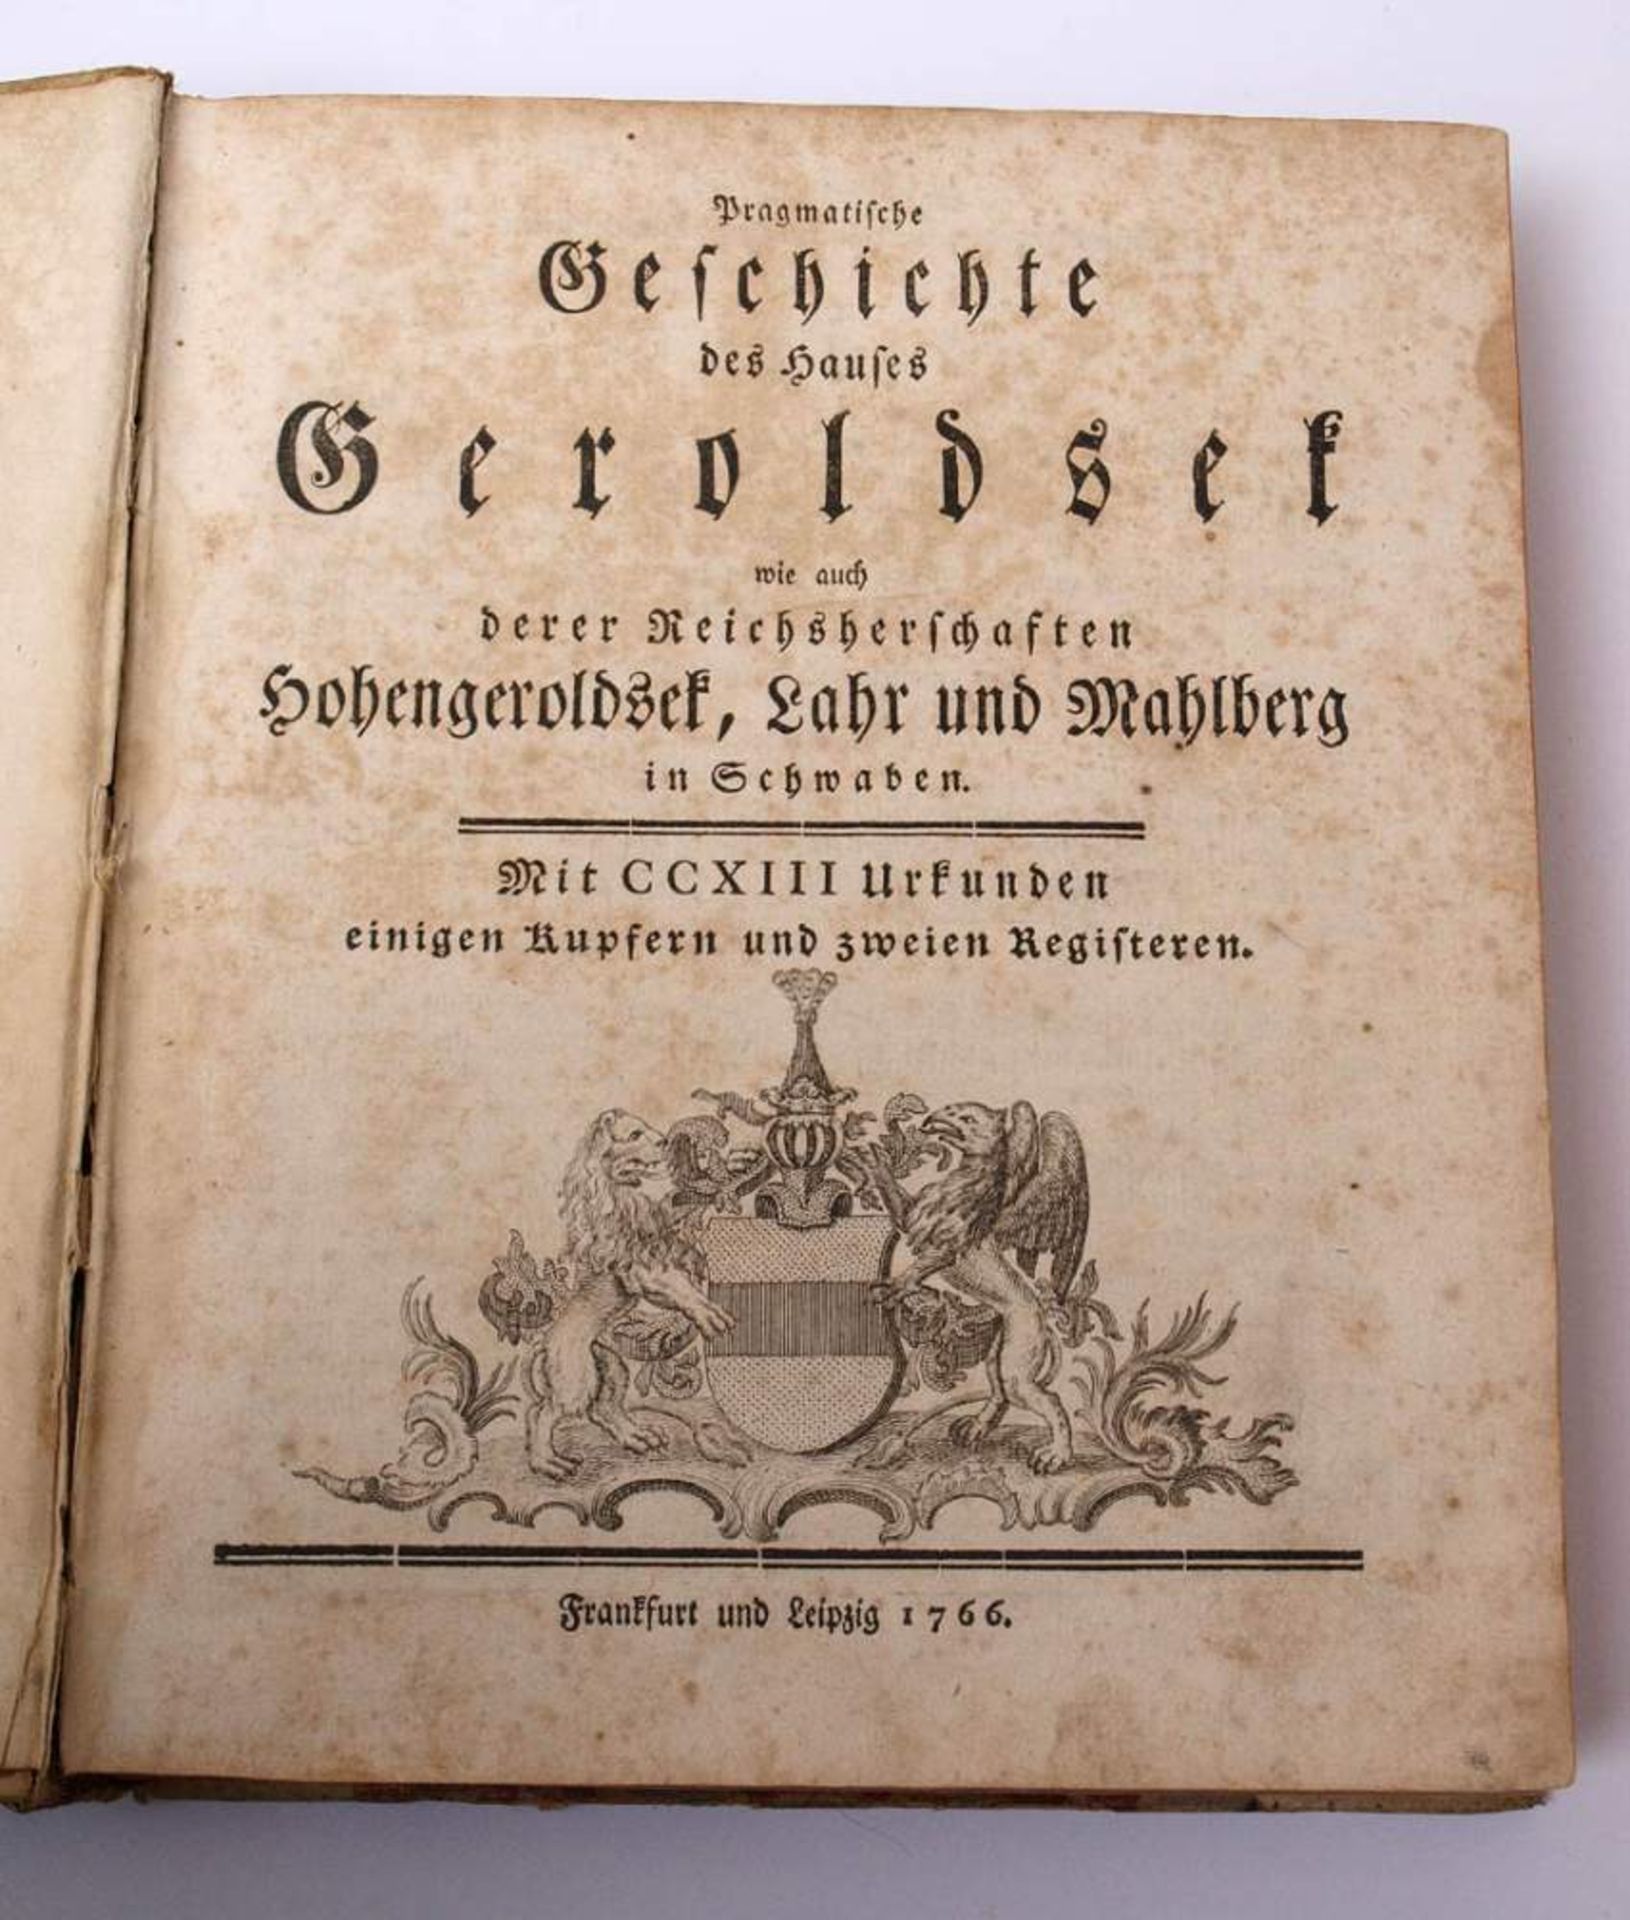 Geschichte des Hauses Geroldseck, Frankfurt und Leipzig, 1766Mit einigen Textillustrationen und